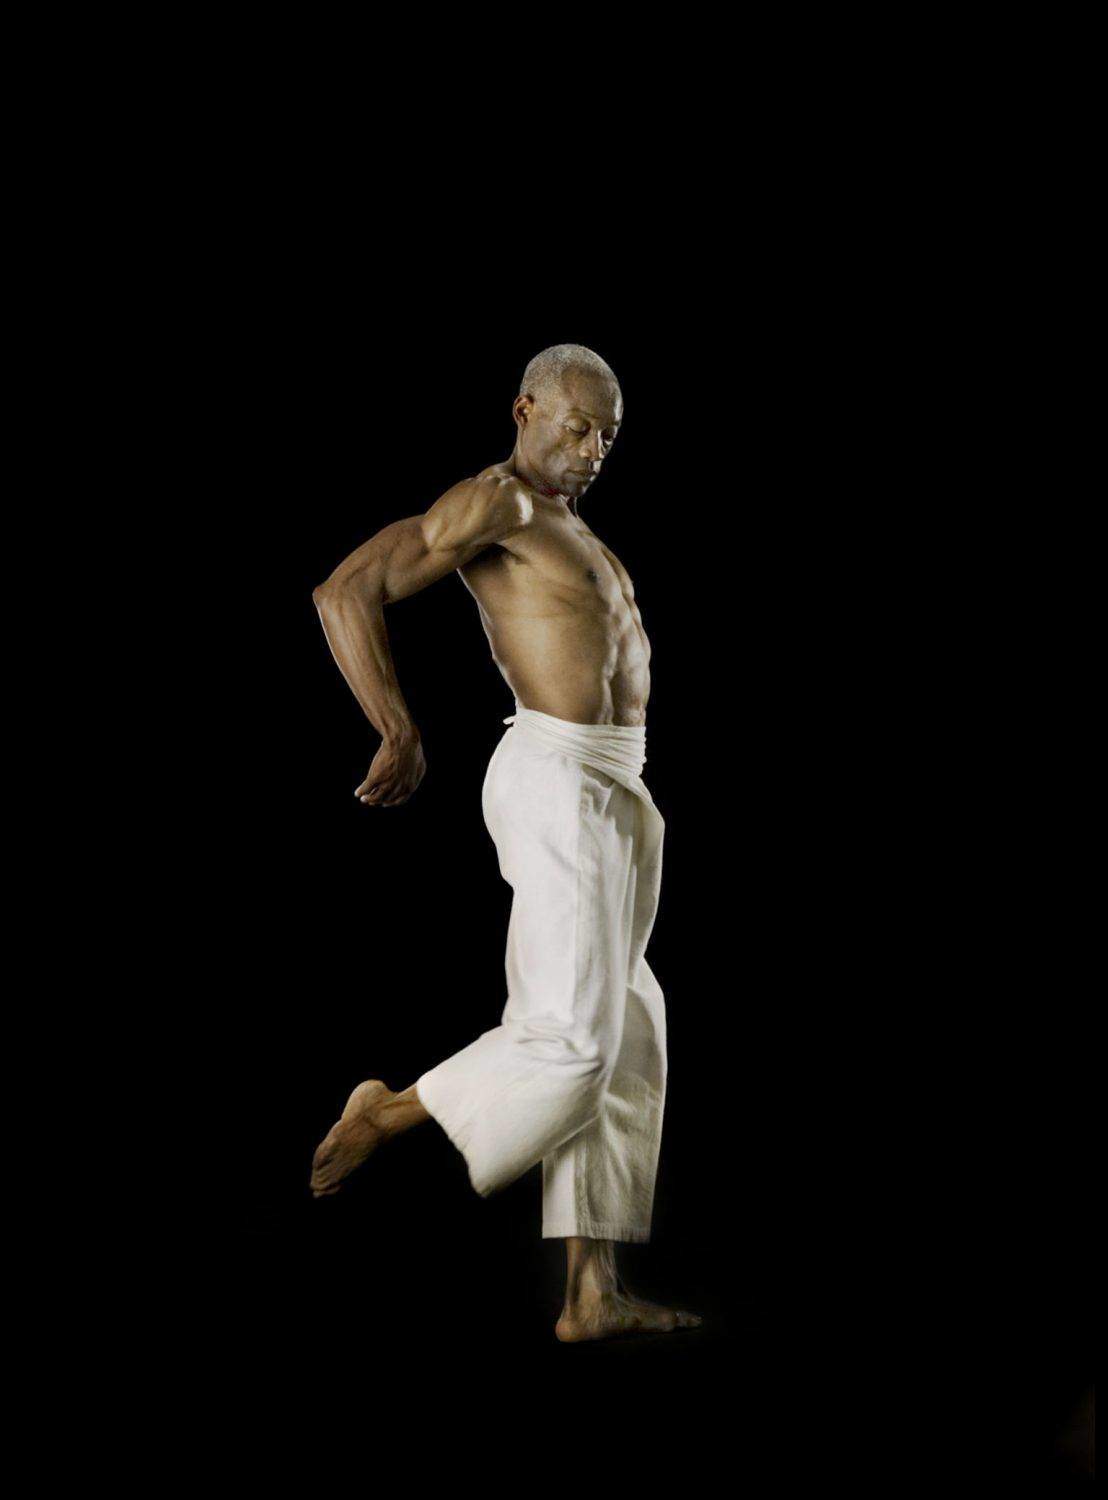 Dancer_Bill T Jones. DAVID MICHALEK: SLOW DANCING